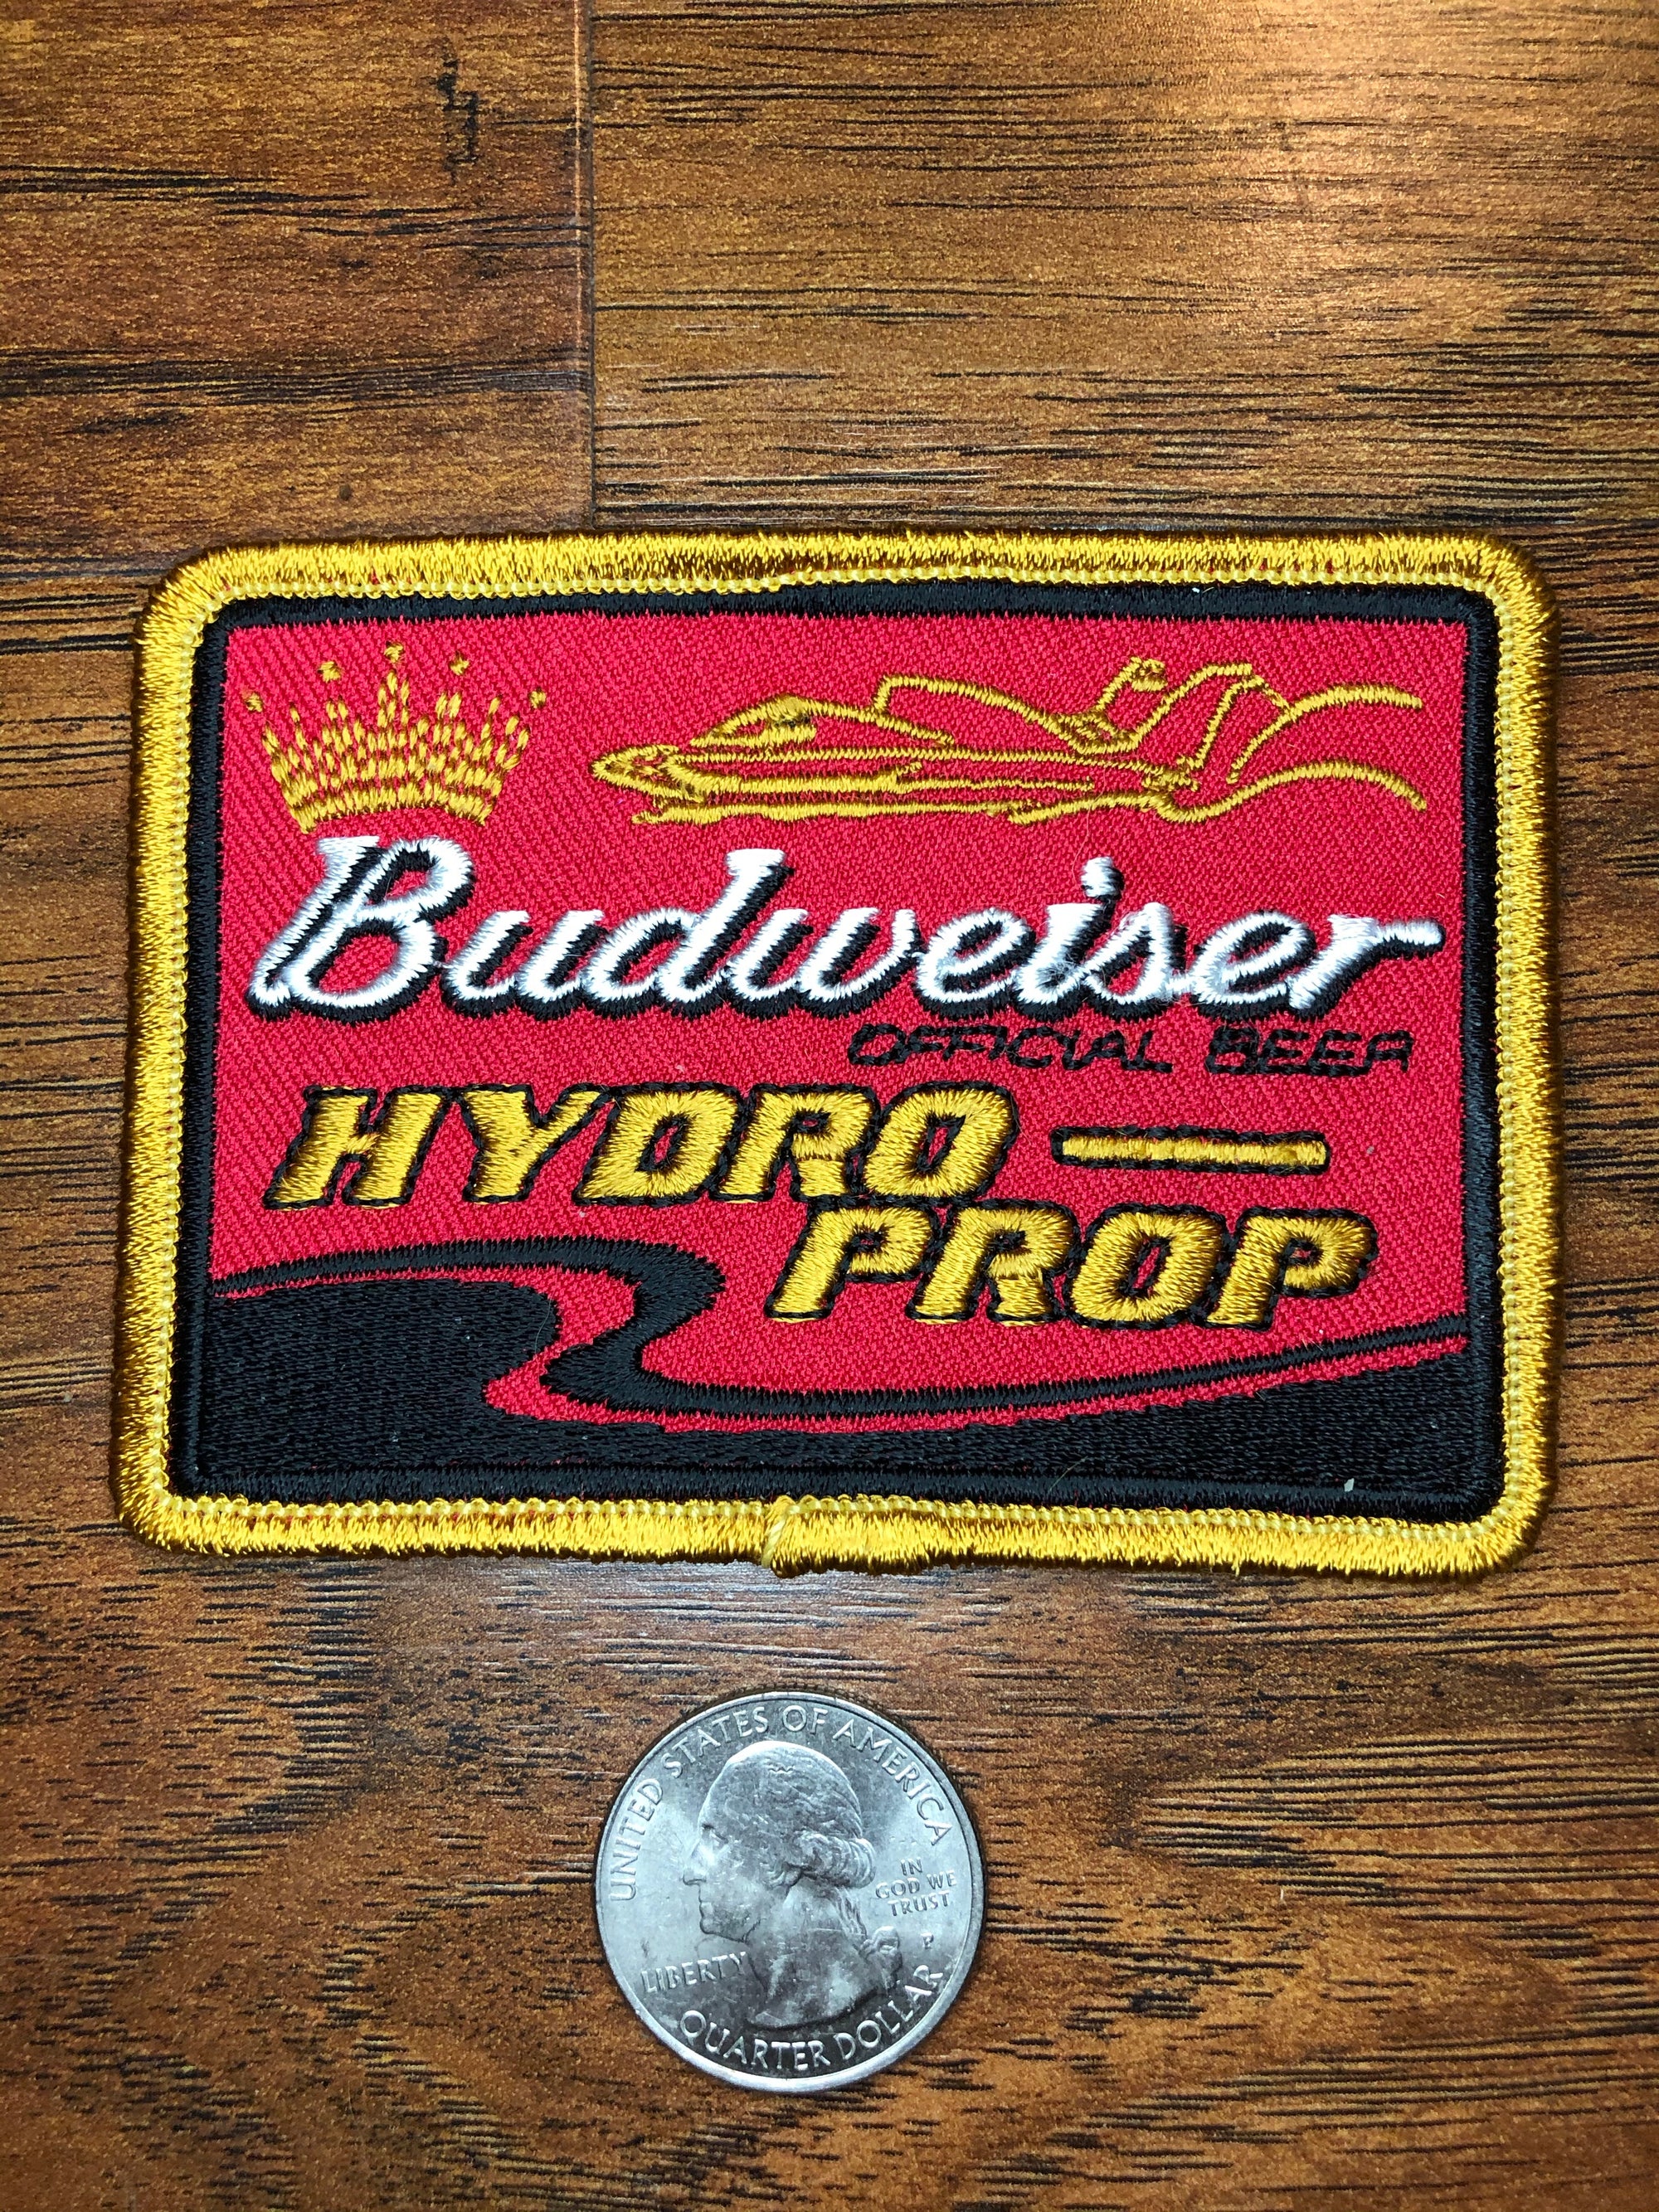 Vintage Budweiser Beer Hydro Prop Hydro Boat Racing 1980's